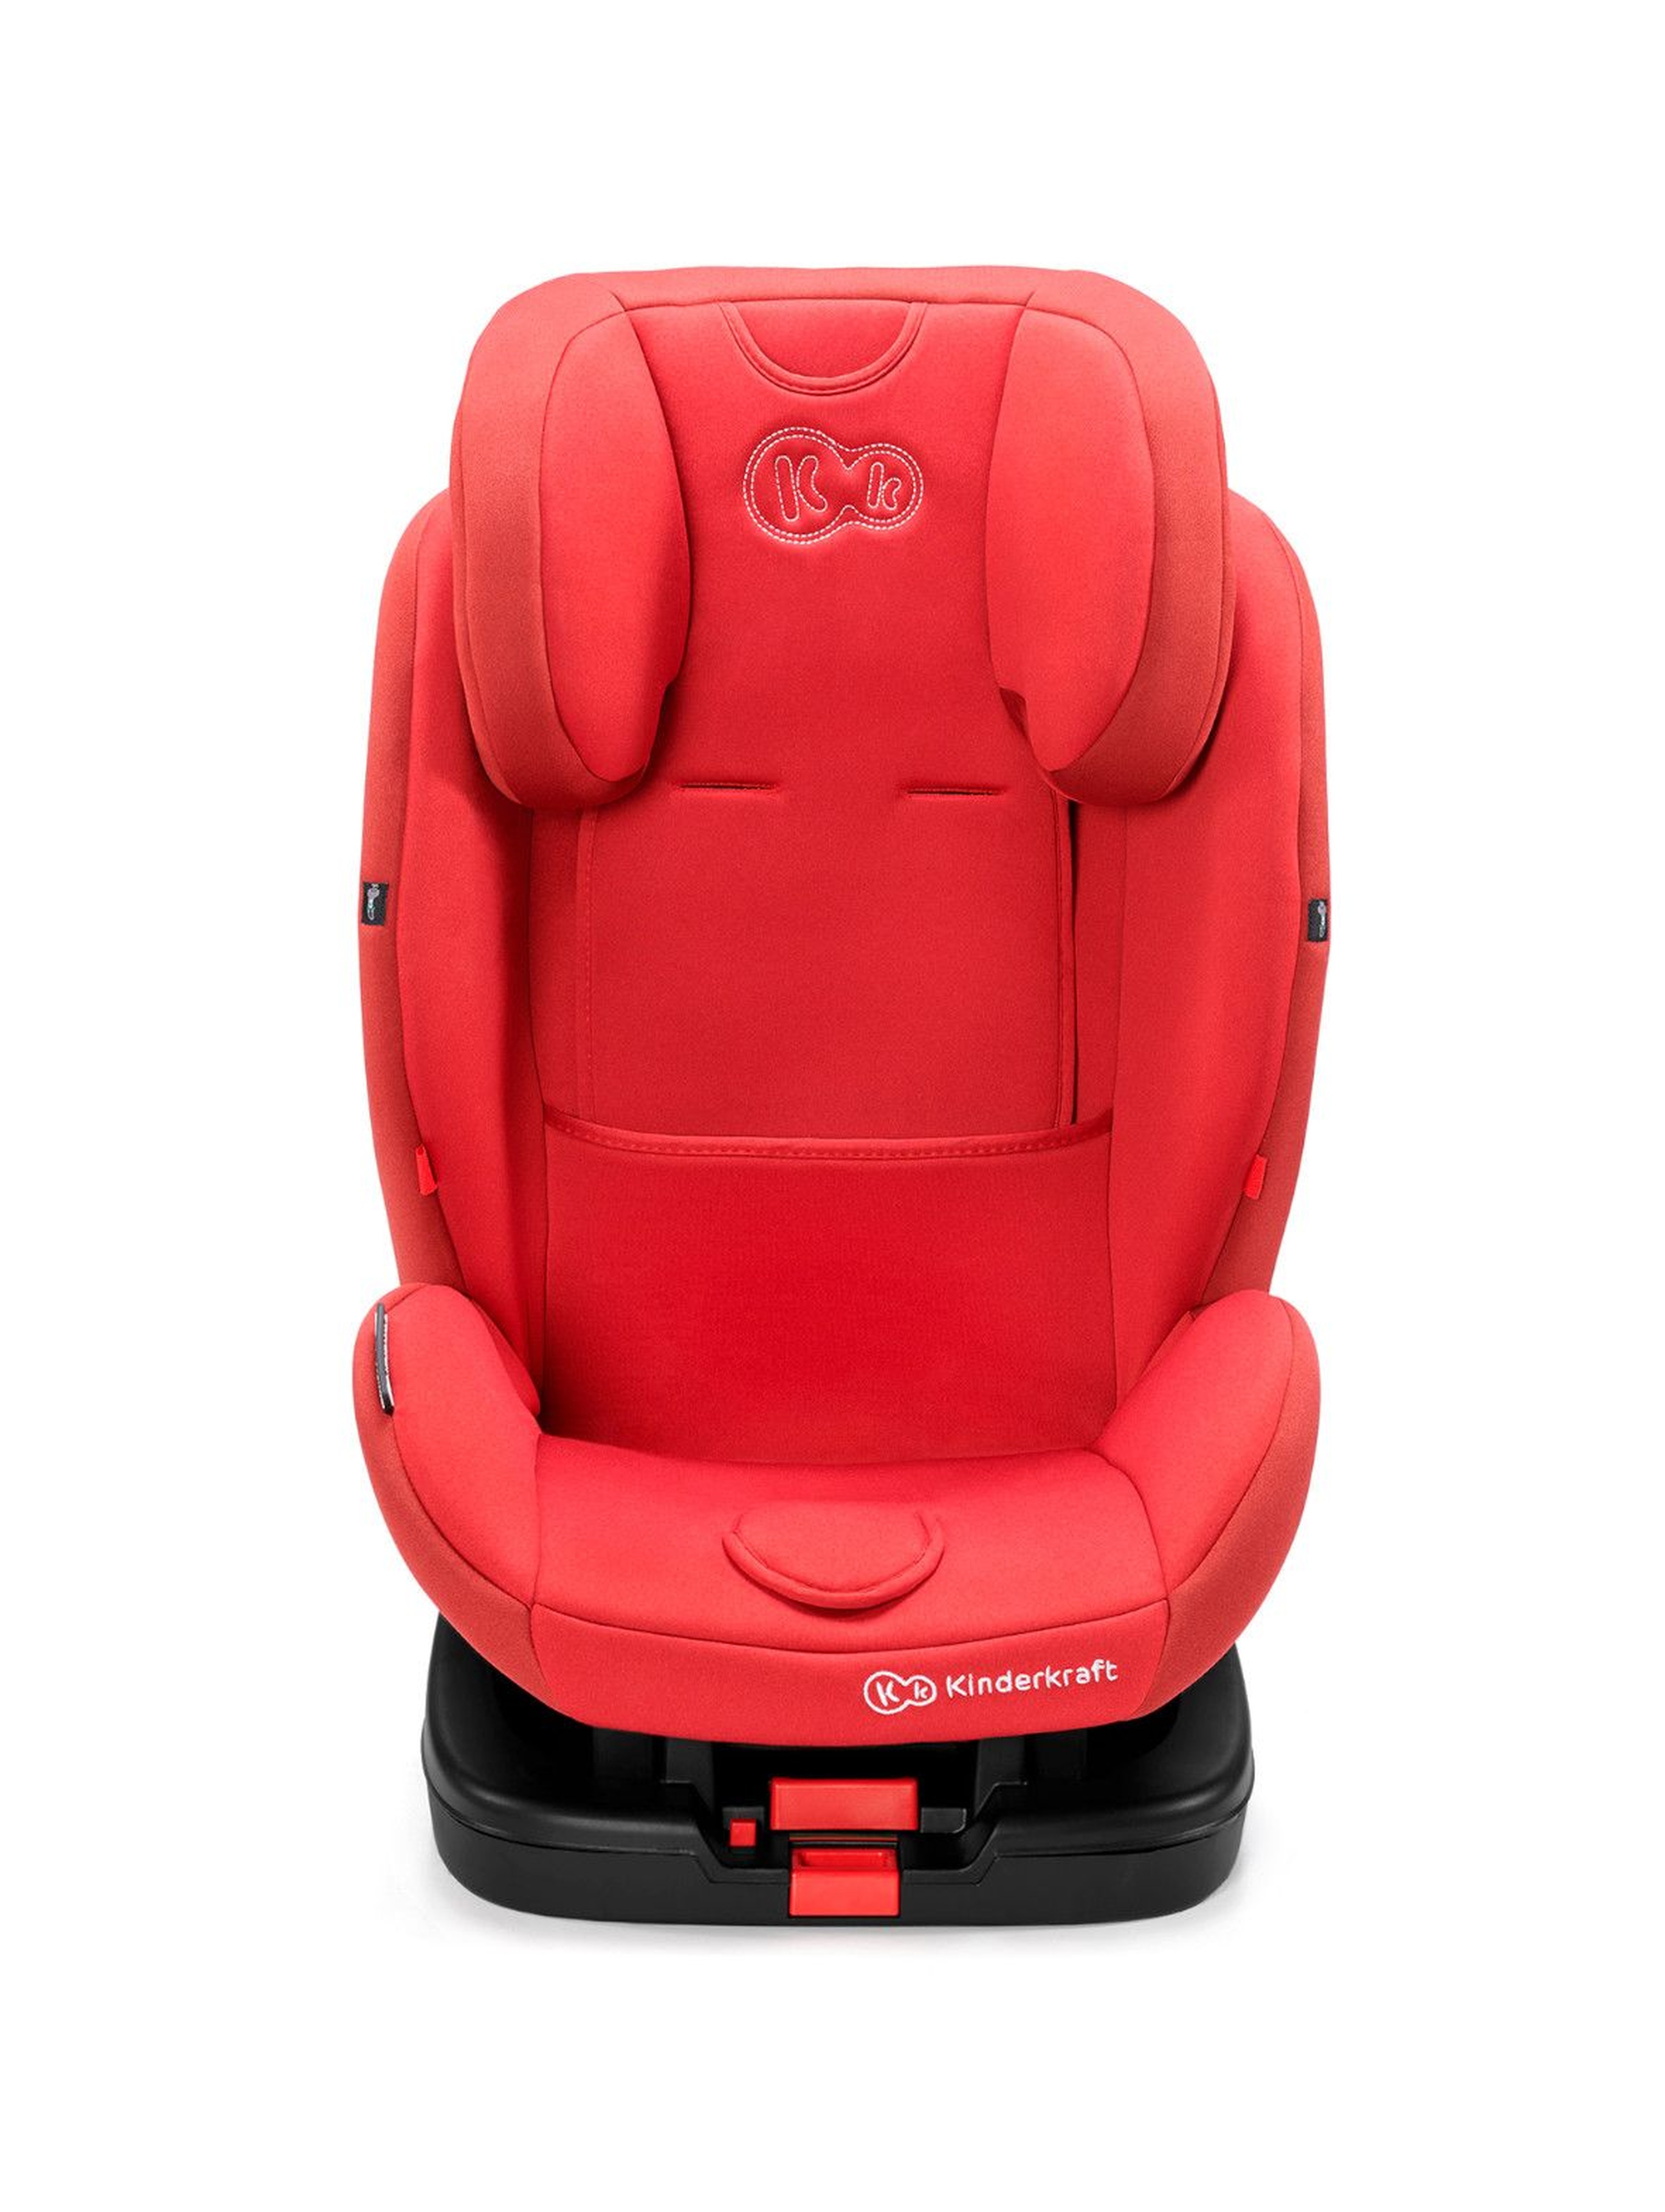 Fotelik samochodowy dla dzieci Vado RWF 0-18 kg ISOFIX czerwony  0-25 kg